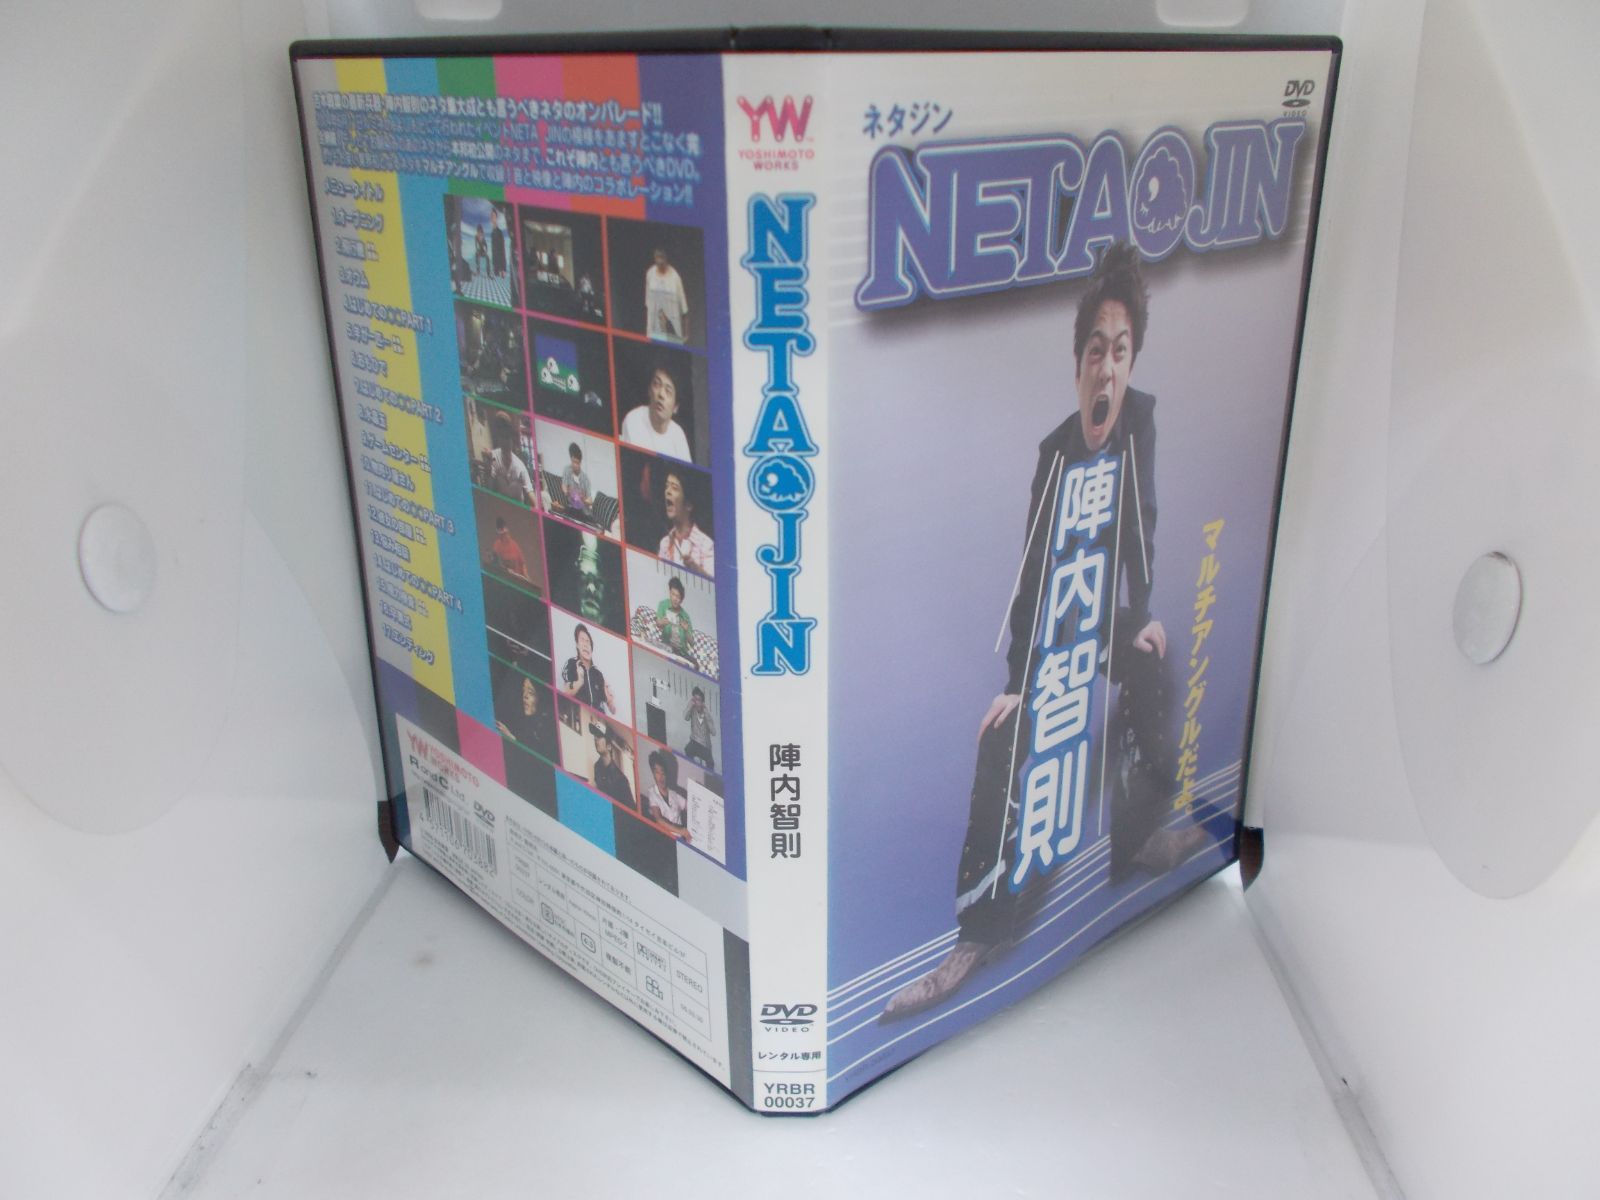 NETA JIN 陣内智則 レンタル専用 中古 DVD ケース付き - 世界の